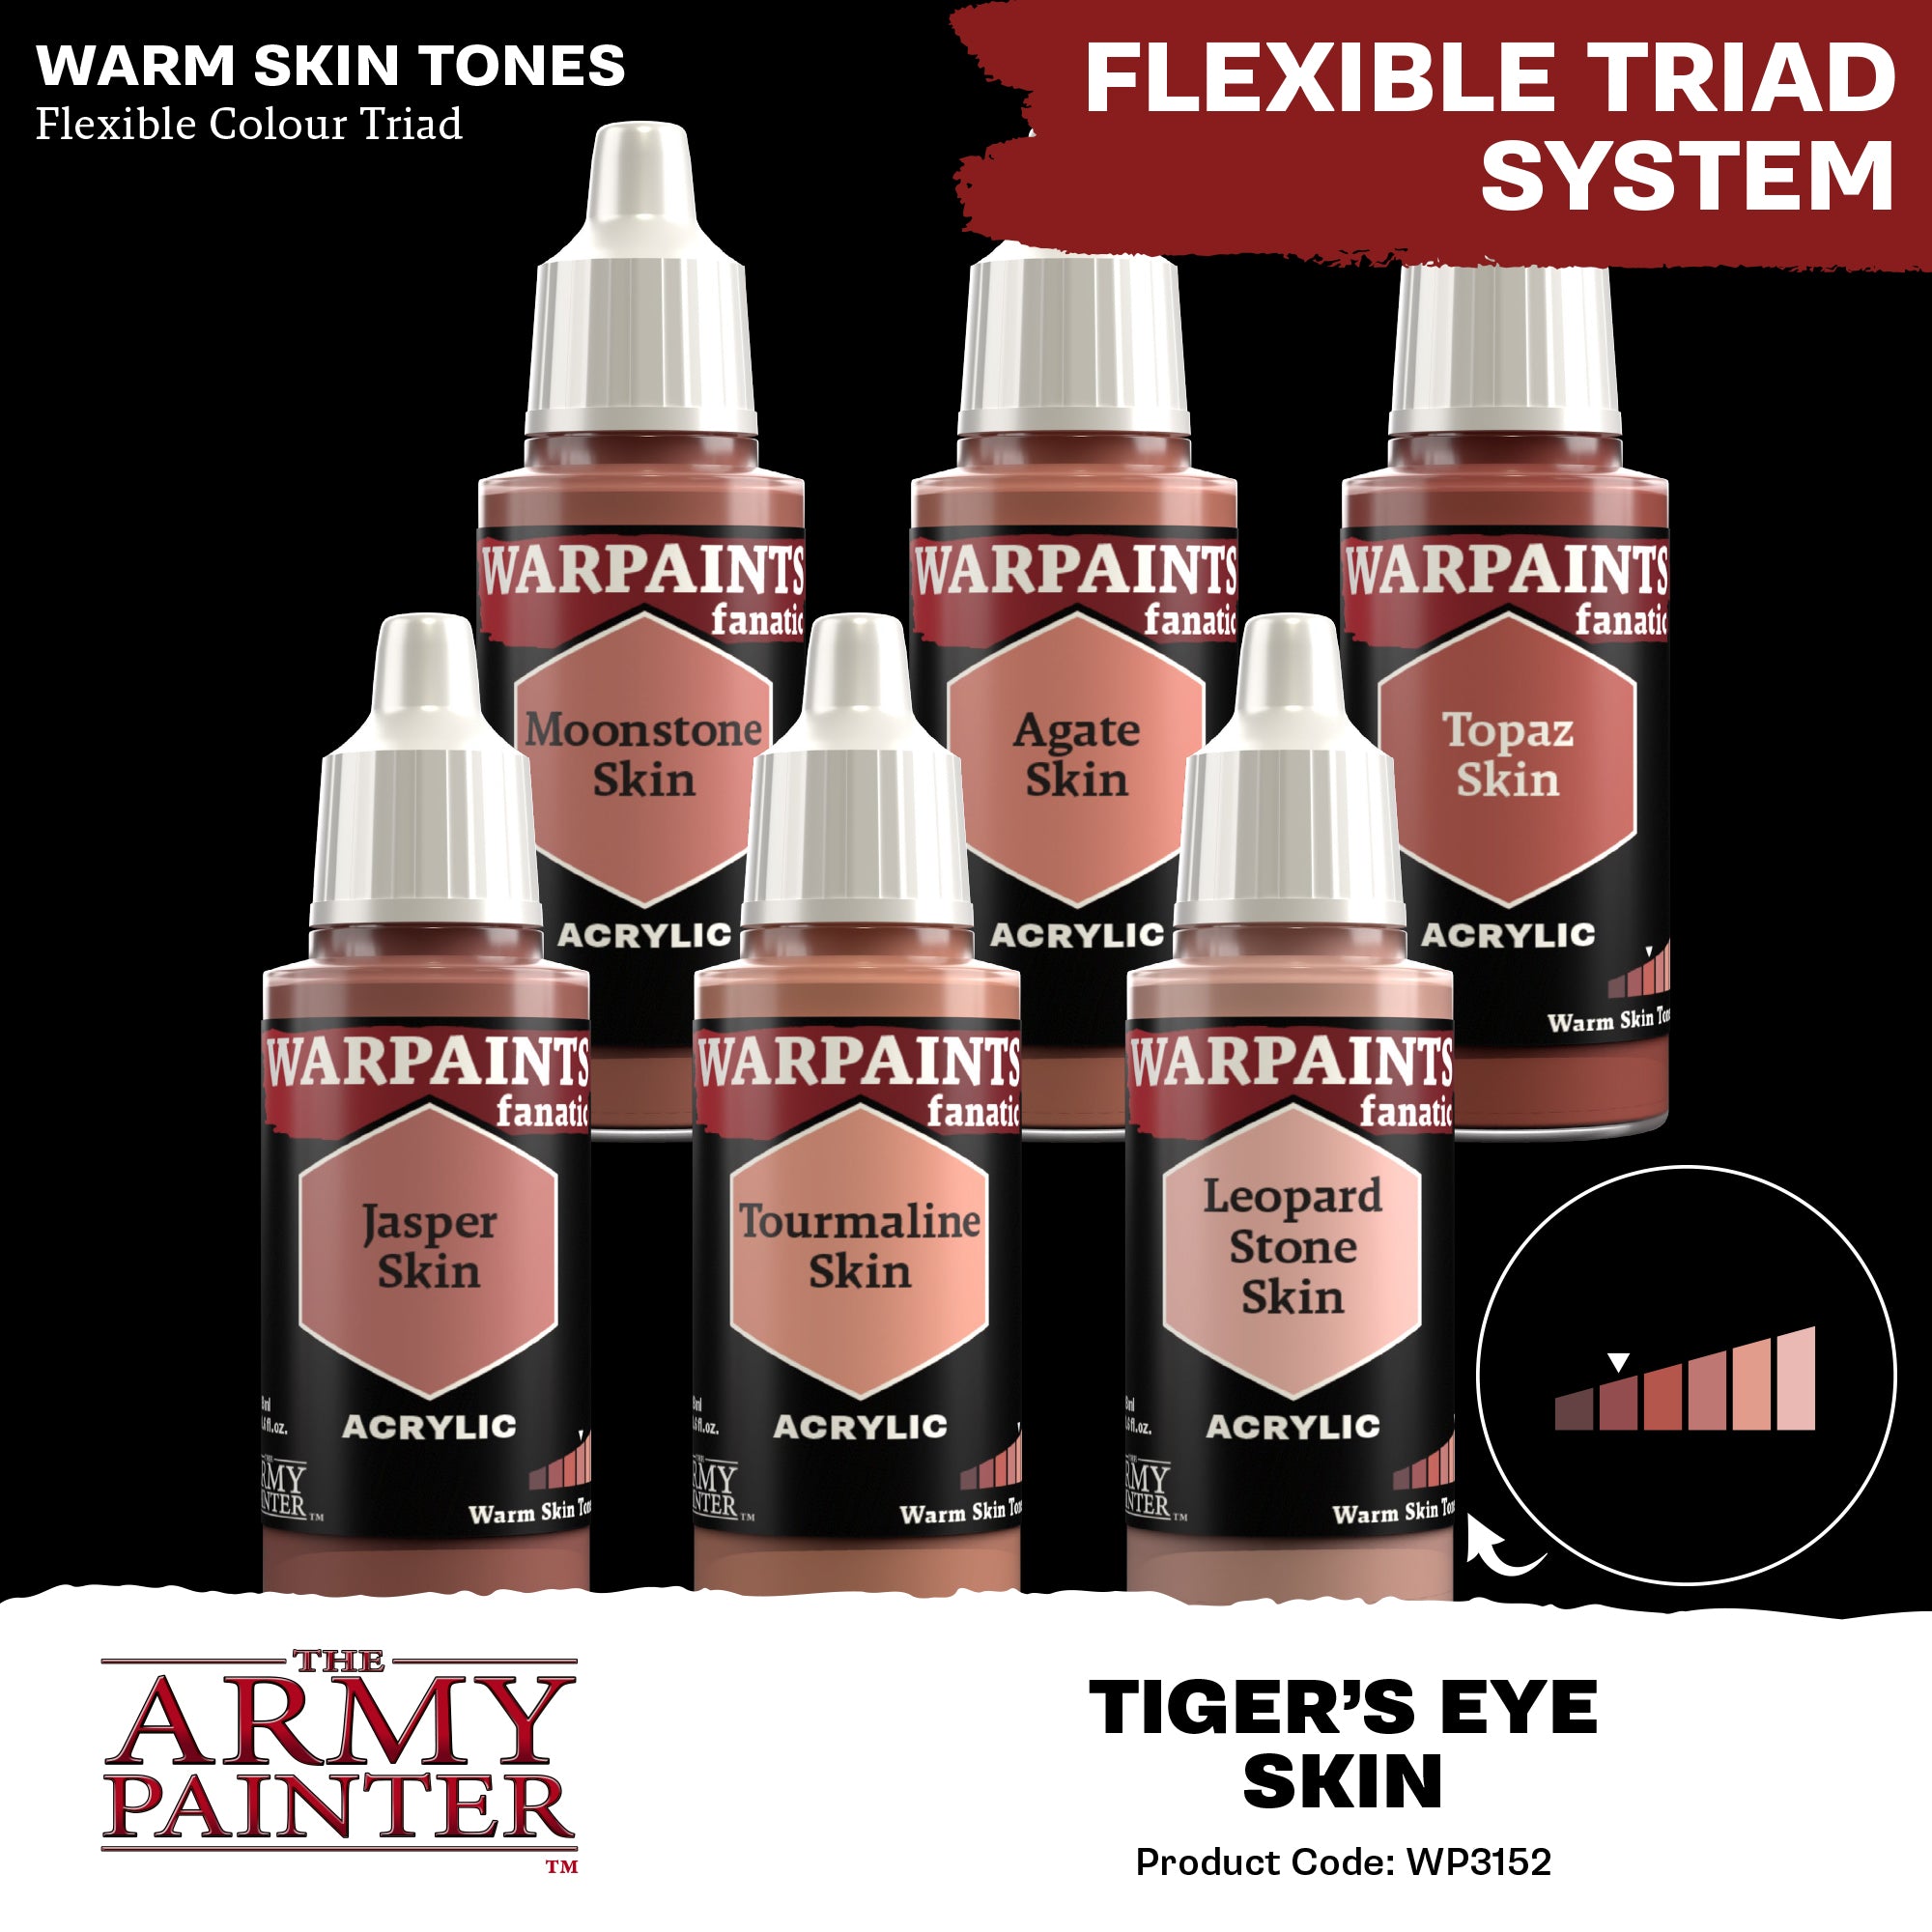 Warpaints Fanatic: Tiger's Eye Skin